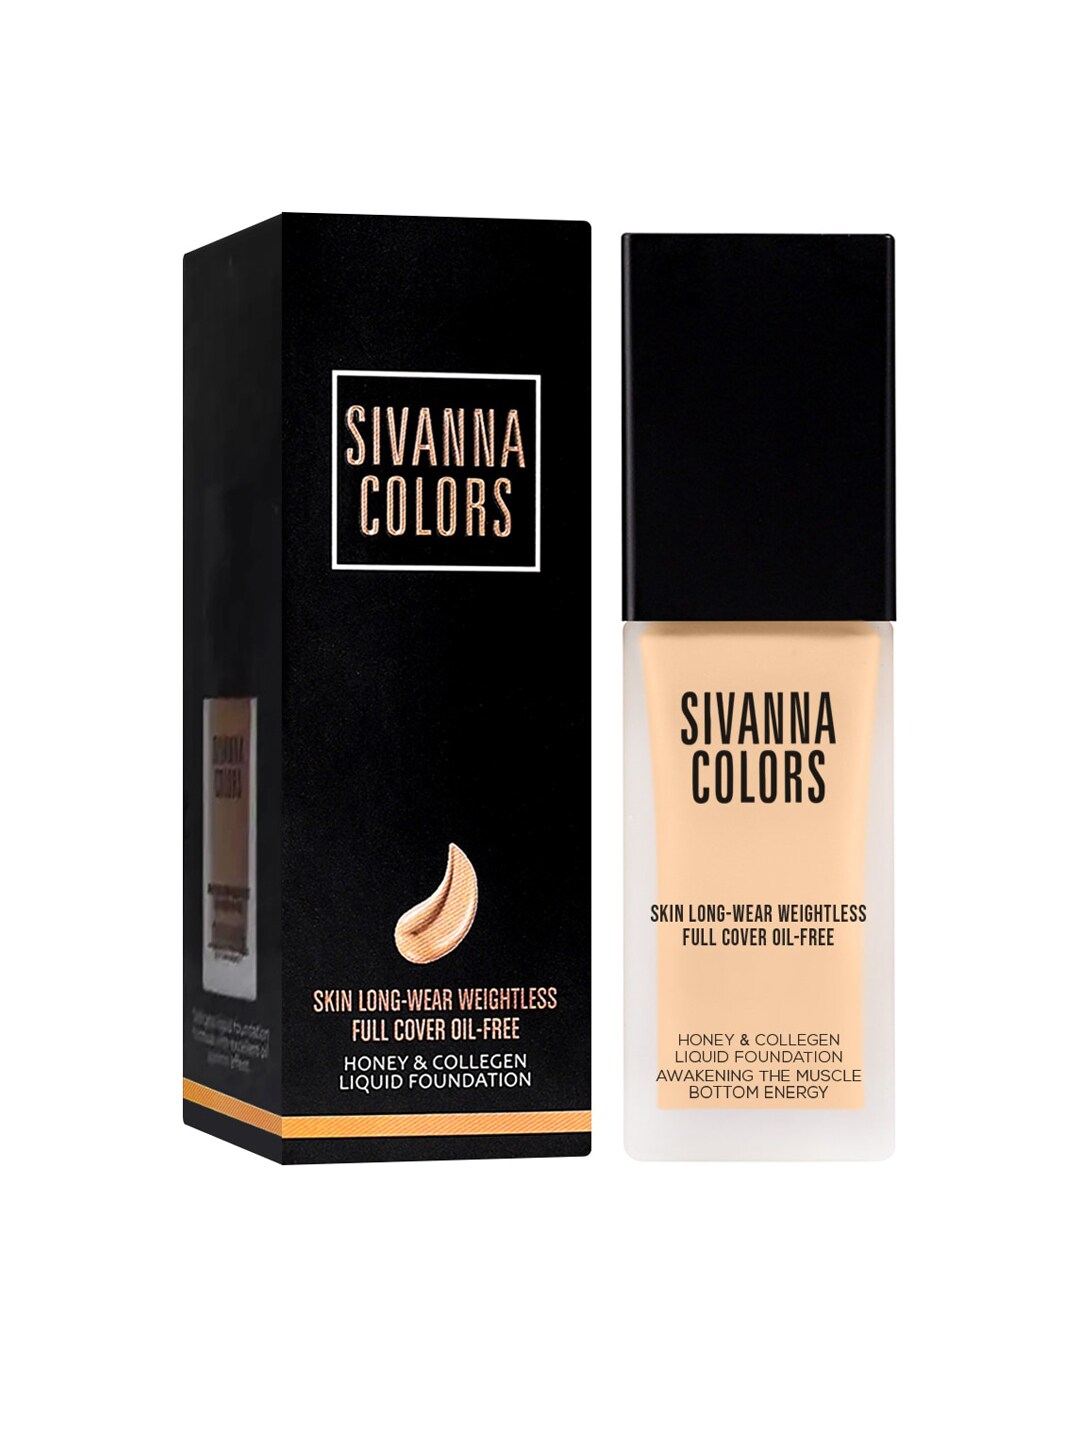 Sivanna Colors Honey & Collagen Liquid Foundation - HF4012 01 Price in India